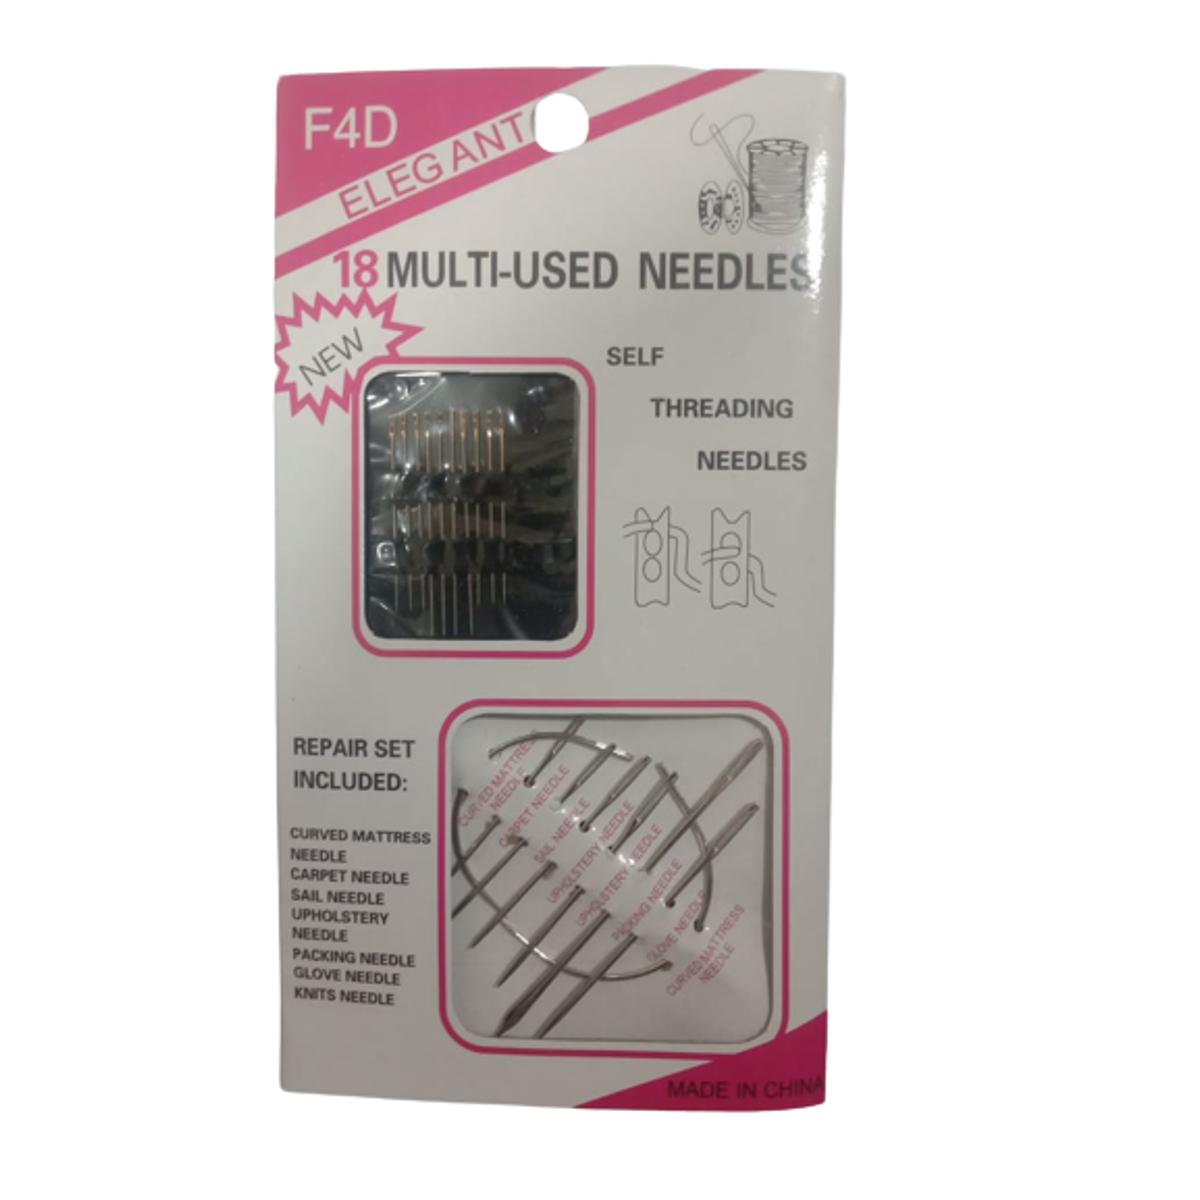 18 Multi-Used Needles F4D